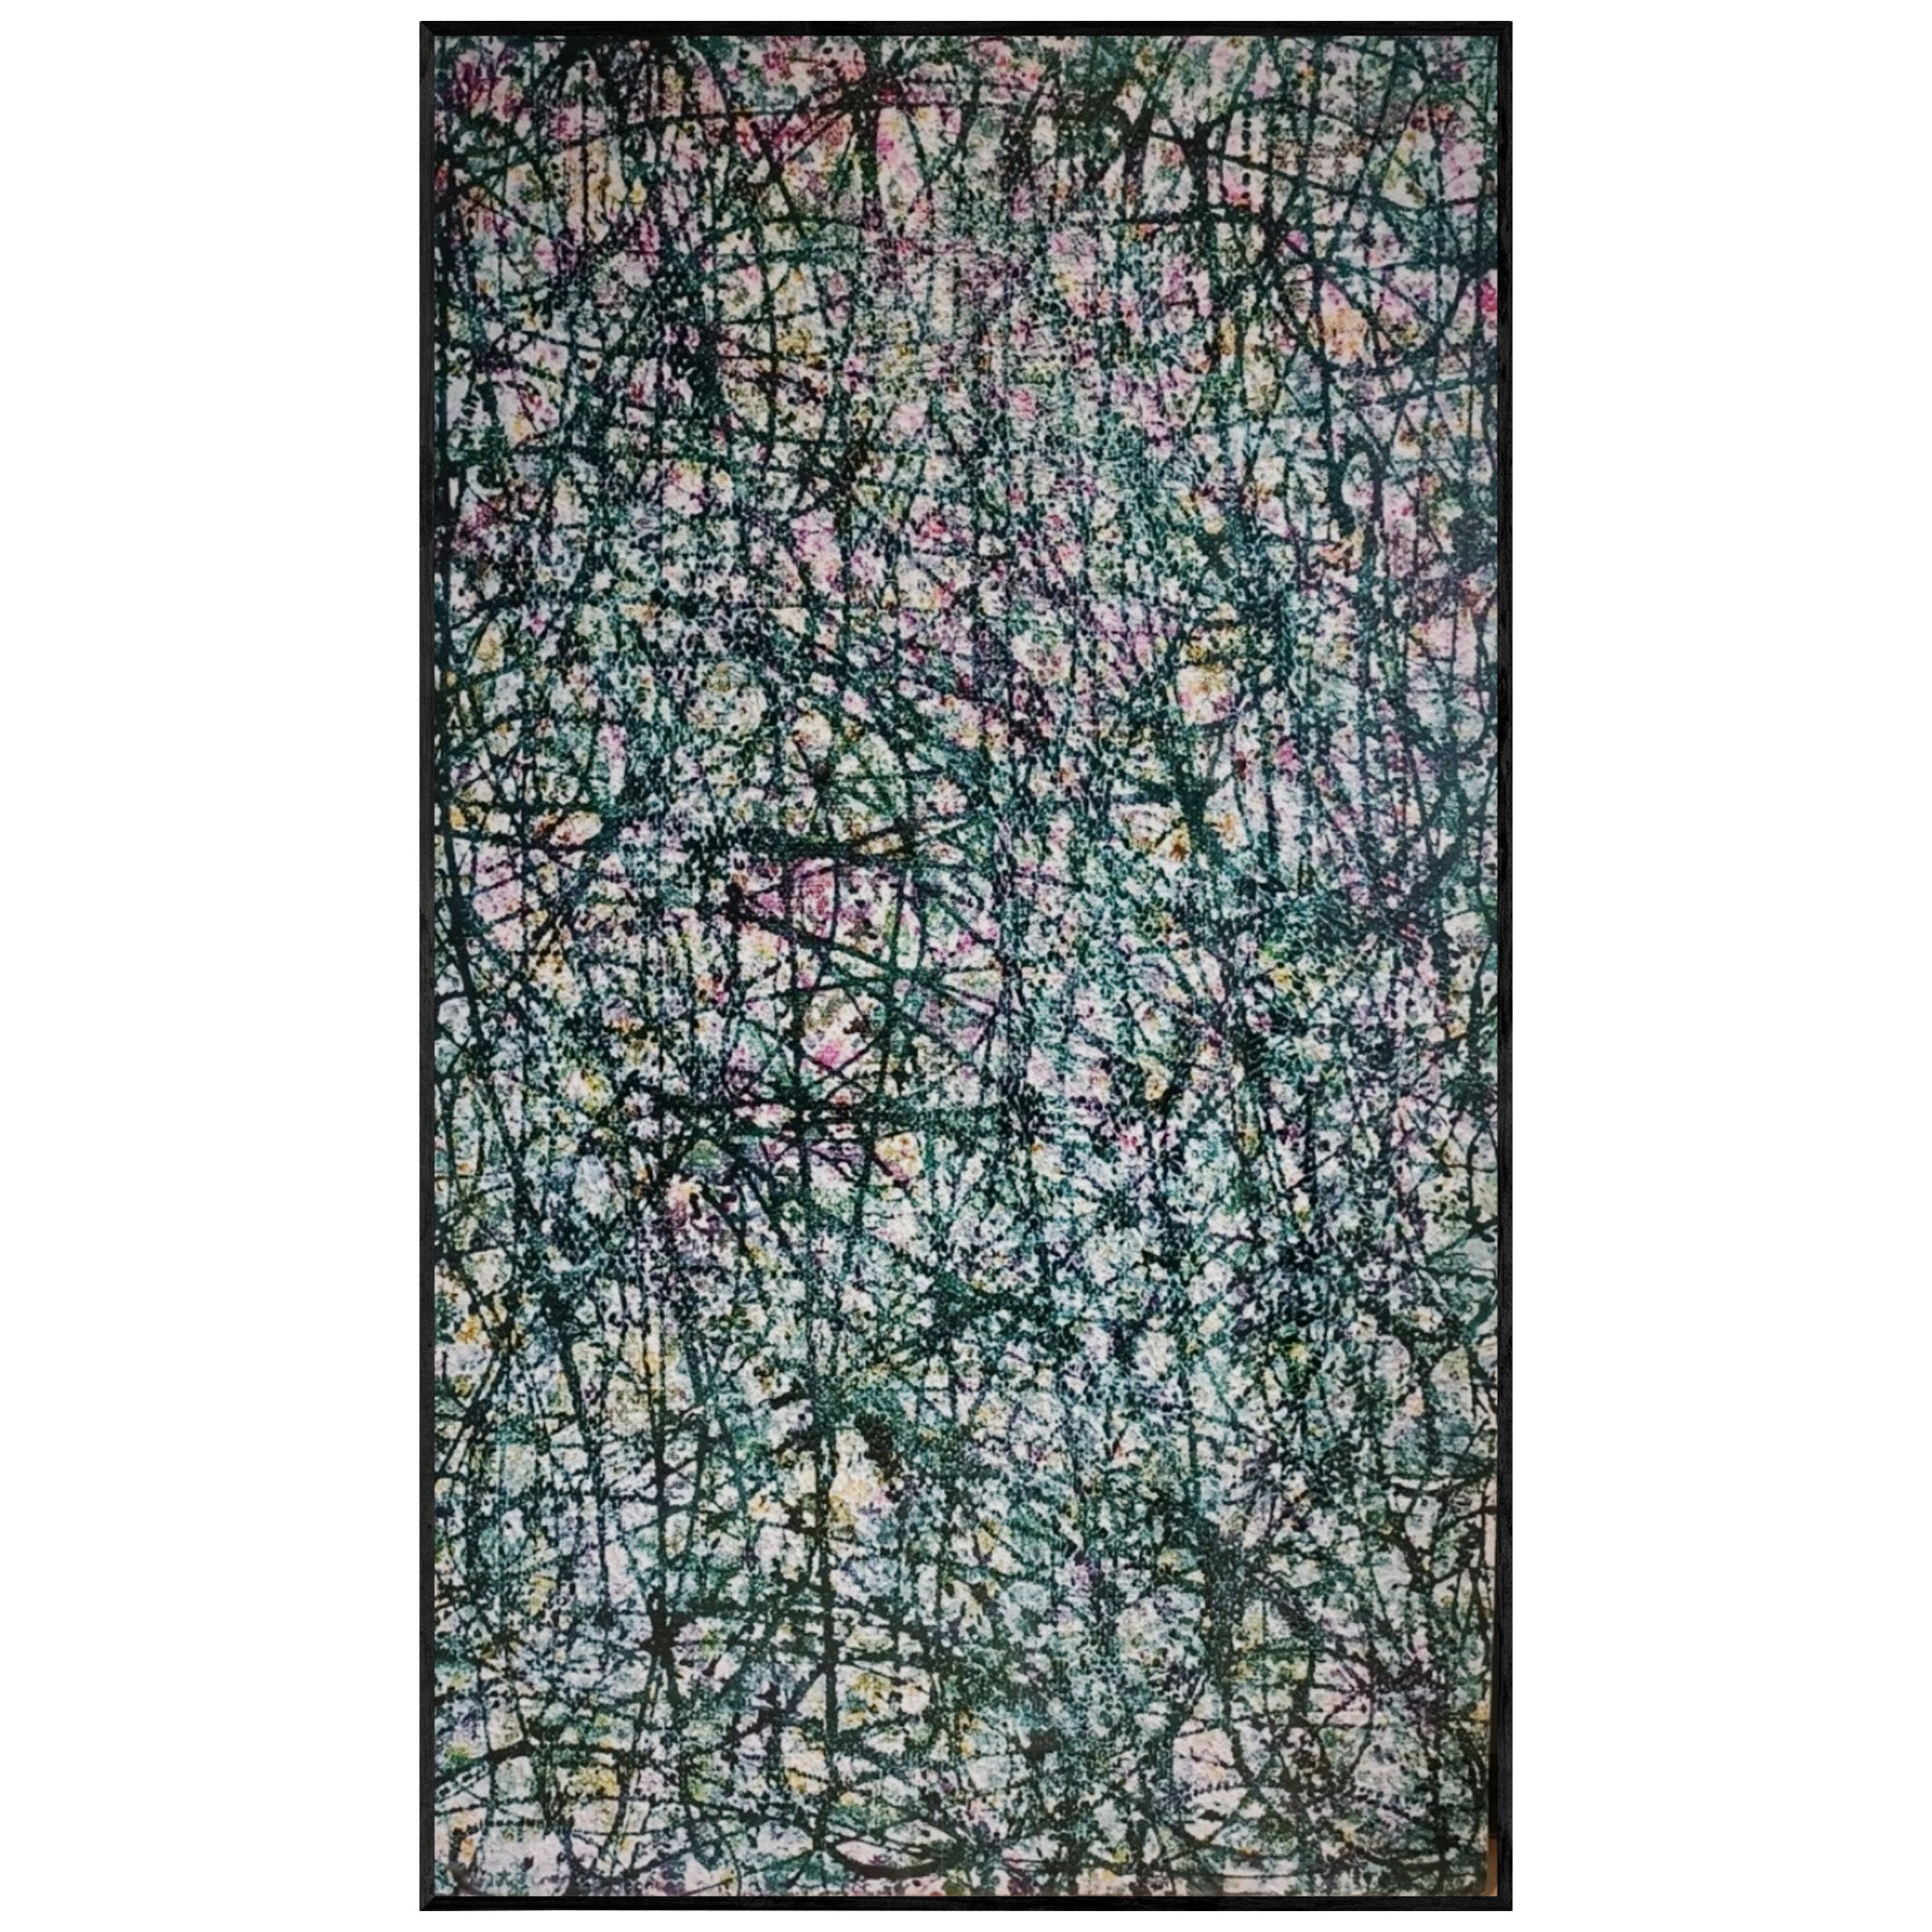 Zeitgenössische abstrakte Malerei im Stil von Jackson Pollock und Larry Poons